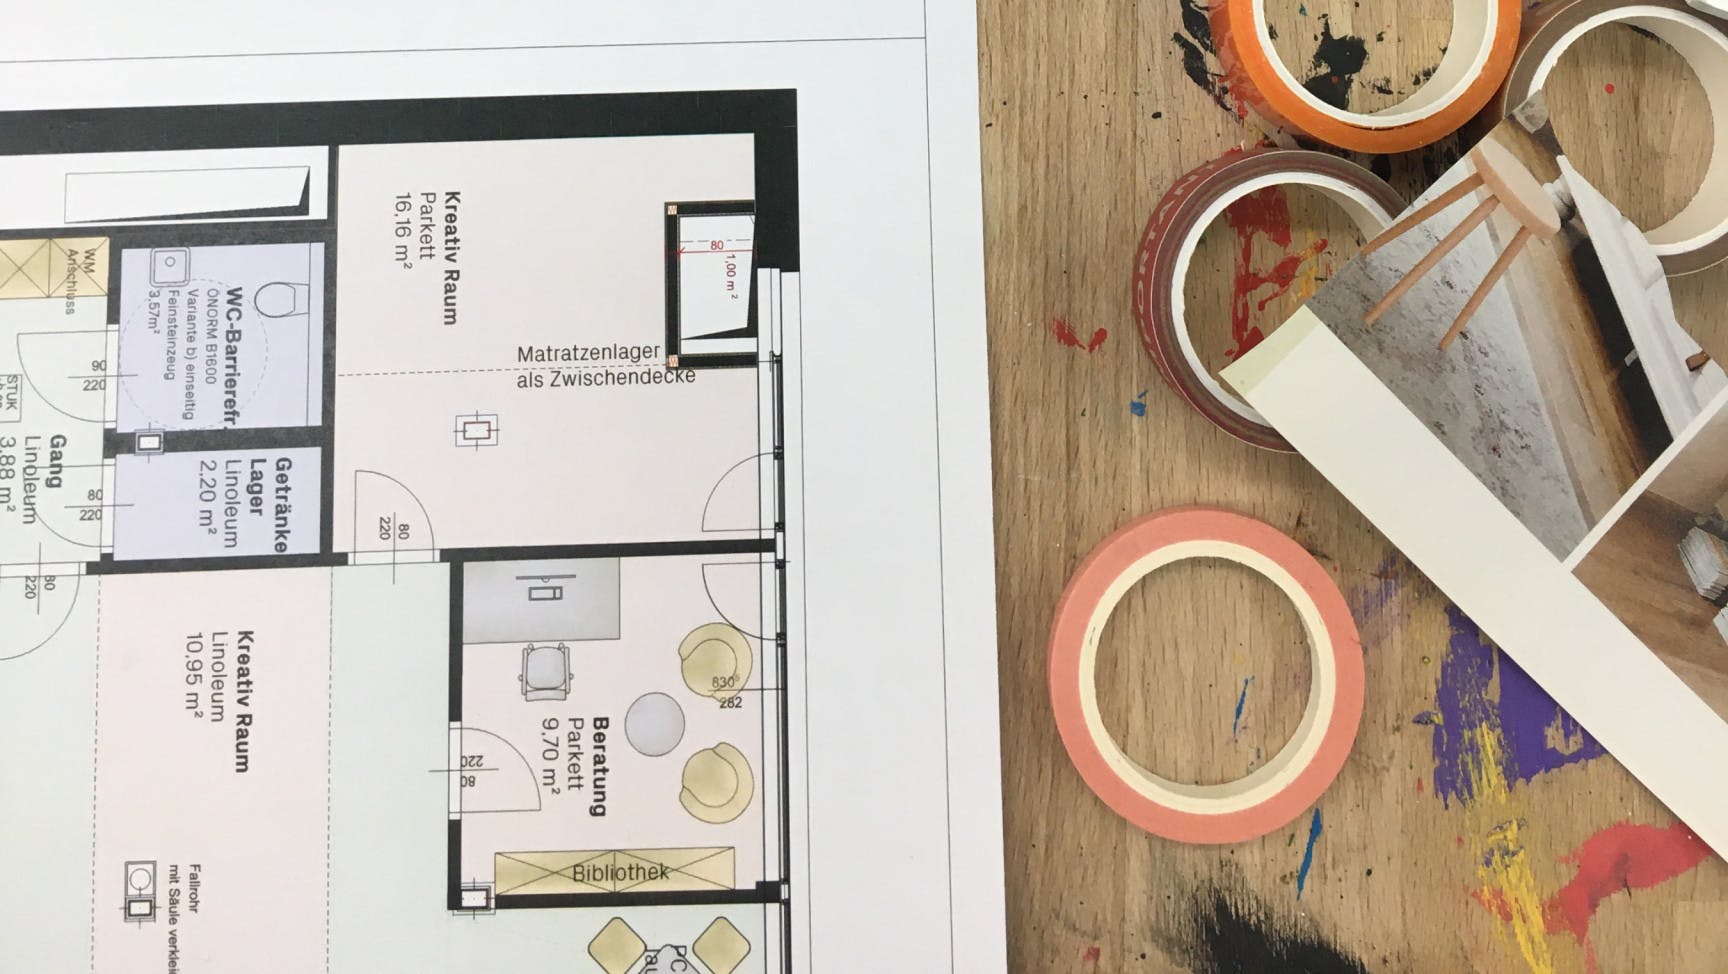 ALT Text: Auf einem Werkstatttisch sieht man einen Teil eines Grundrissplans, unterschiedliche Klebebänder und 2 Behälter mit Wachsmalkreiden liegen.